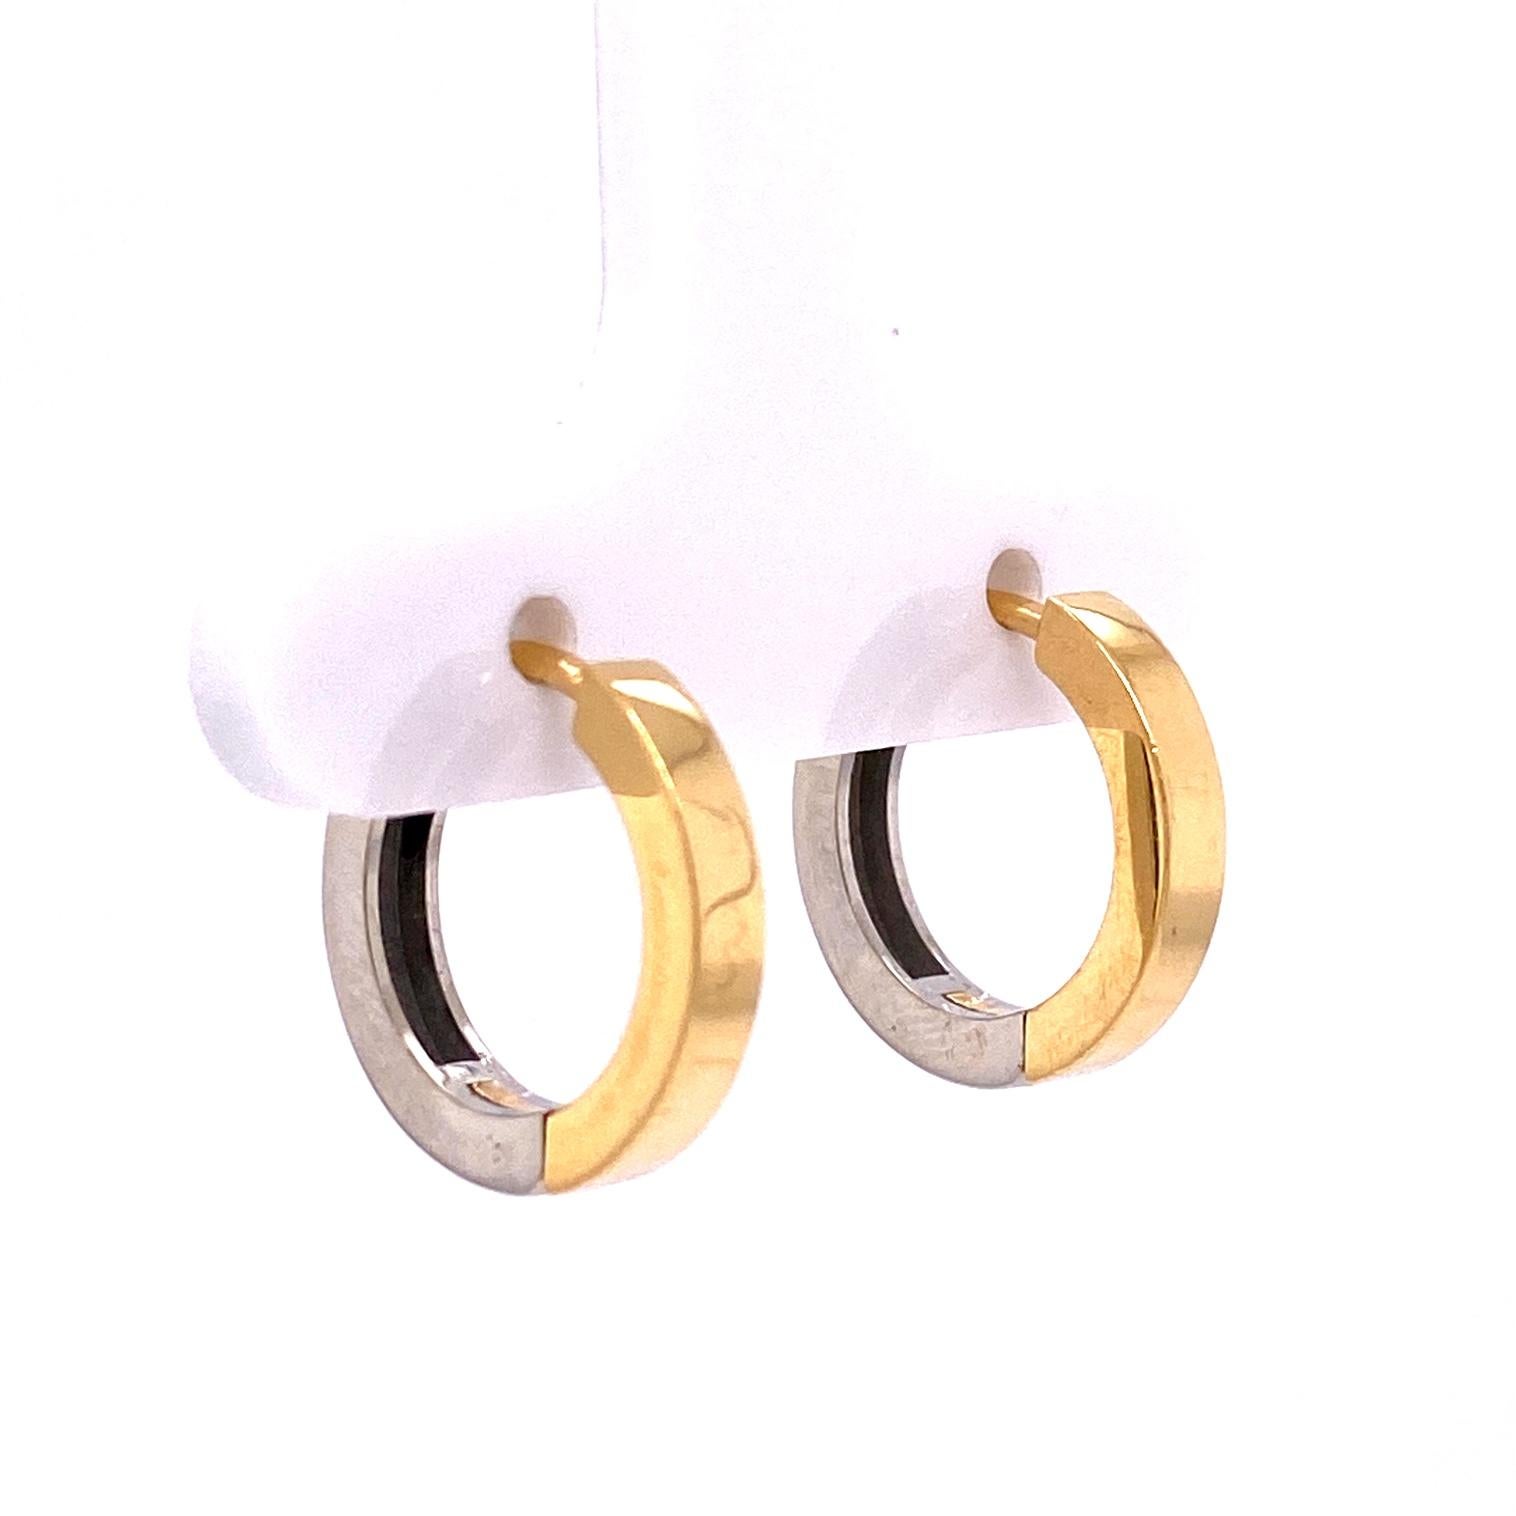 Ein Paar Ohrringe aus 18-karätigem Gelb- und Weißgold mit einem Paar Schmetterlingsjacken aus 18-karätigem Weißgold, besetzt mit runden weißen Diamanten von 1,4 Karat. Diese Ohrringe wurden von llyn strong hergestellt und entworfen.

Artikel werden